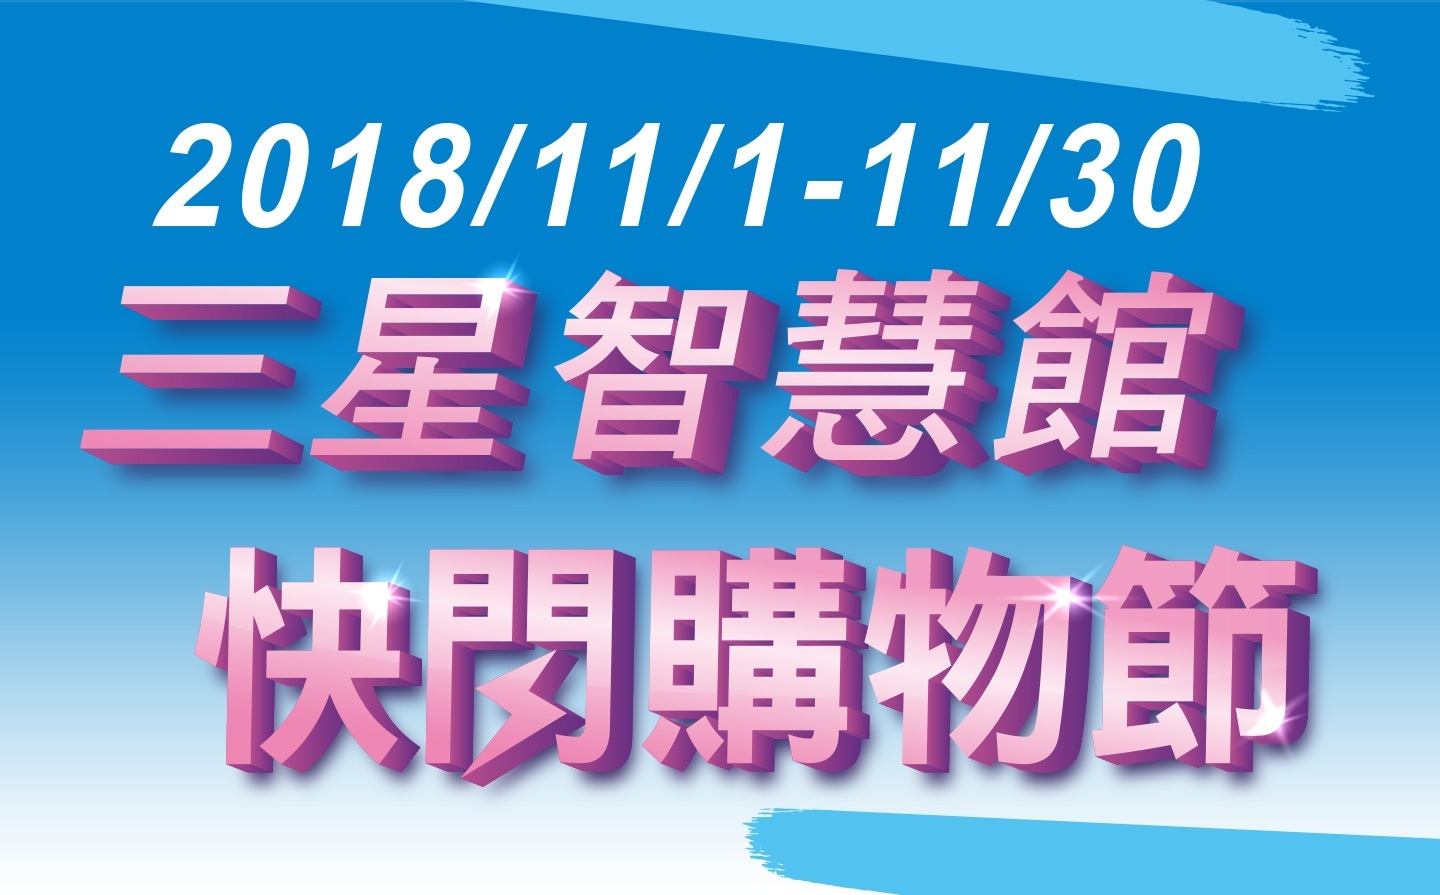 2018/11/1-11/30三星智慧管 快閃購物節 活動banner